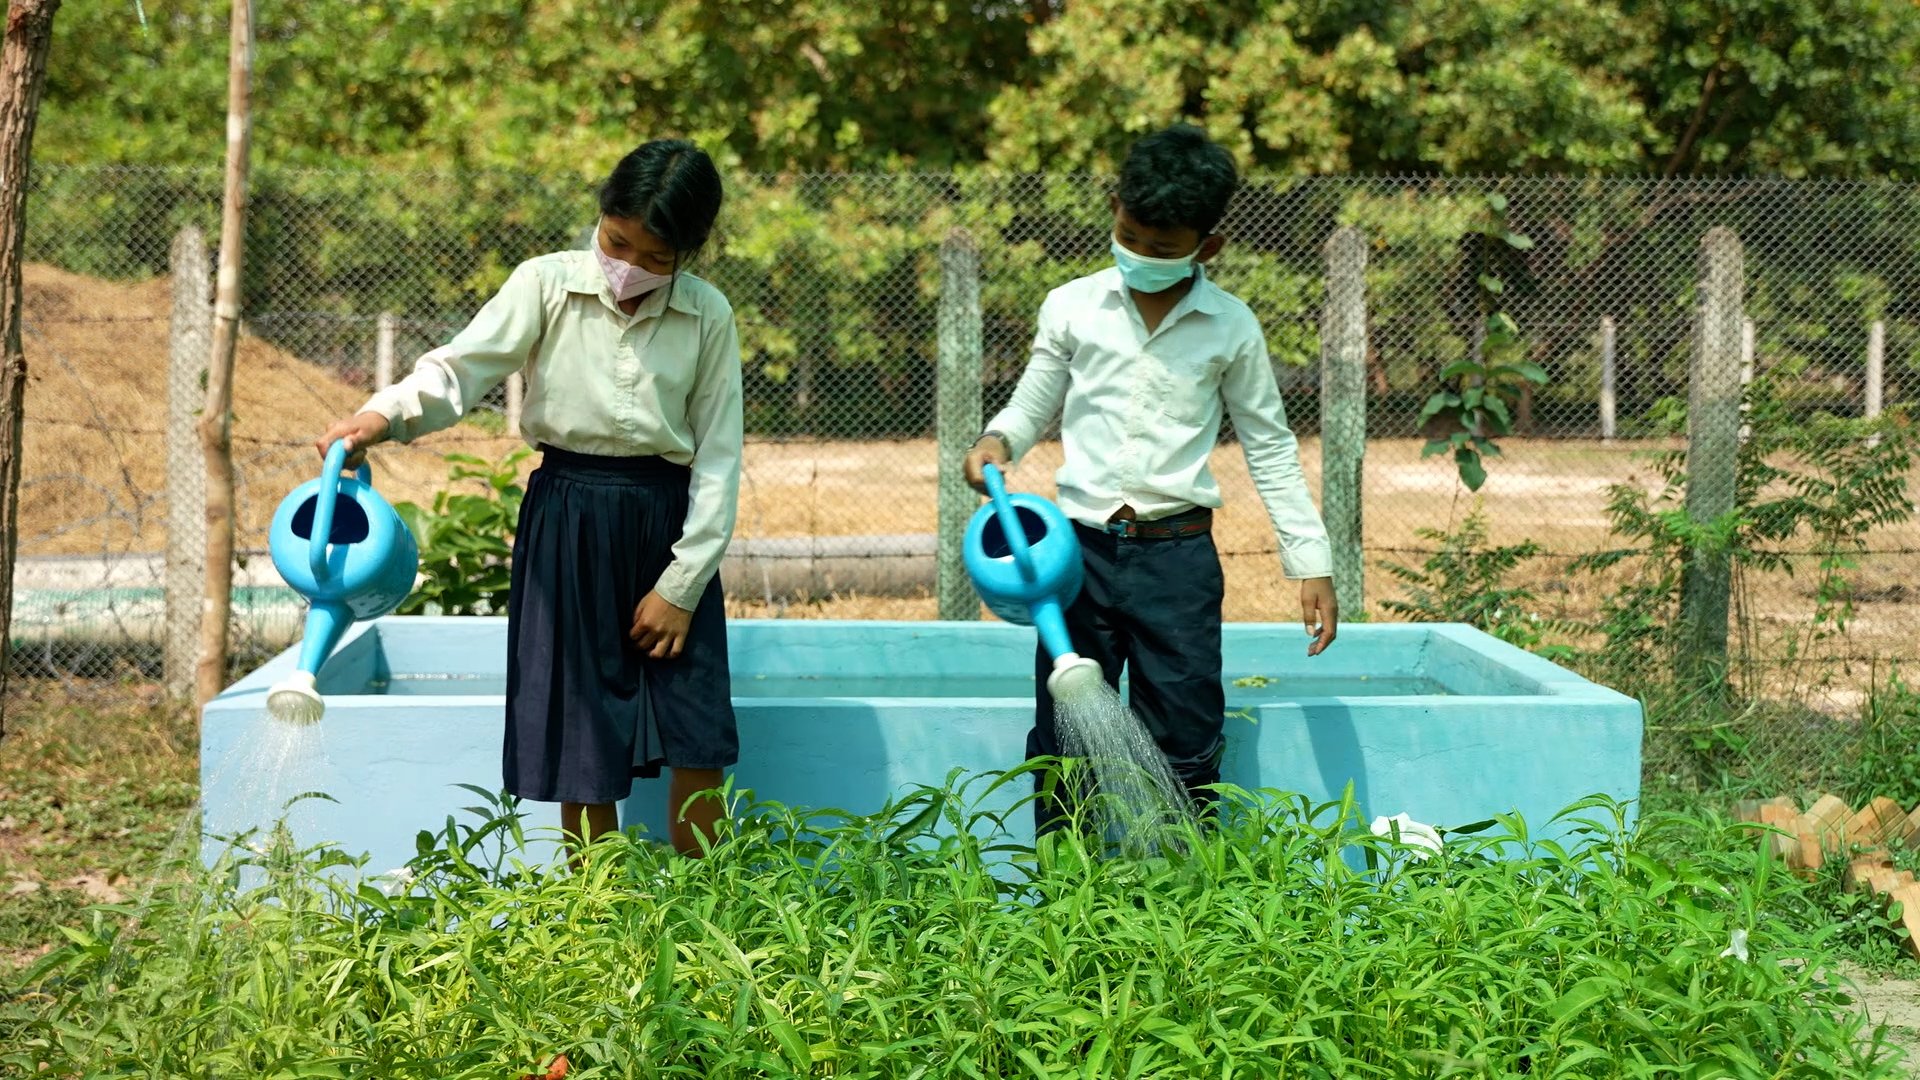 School children water their garden